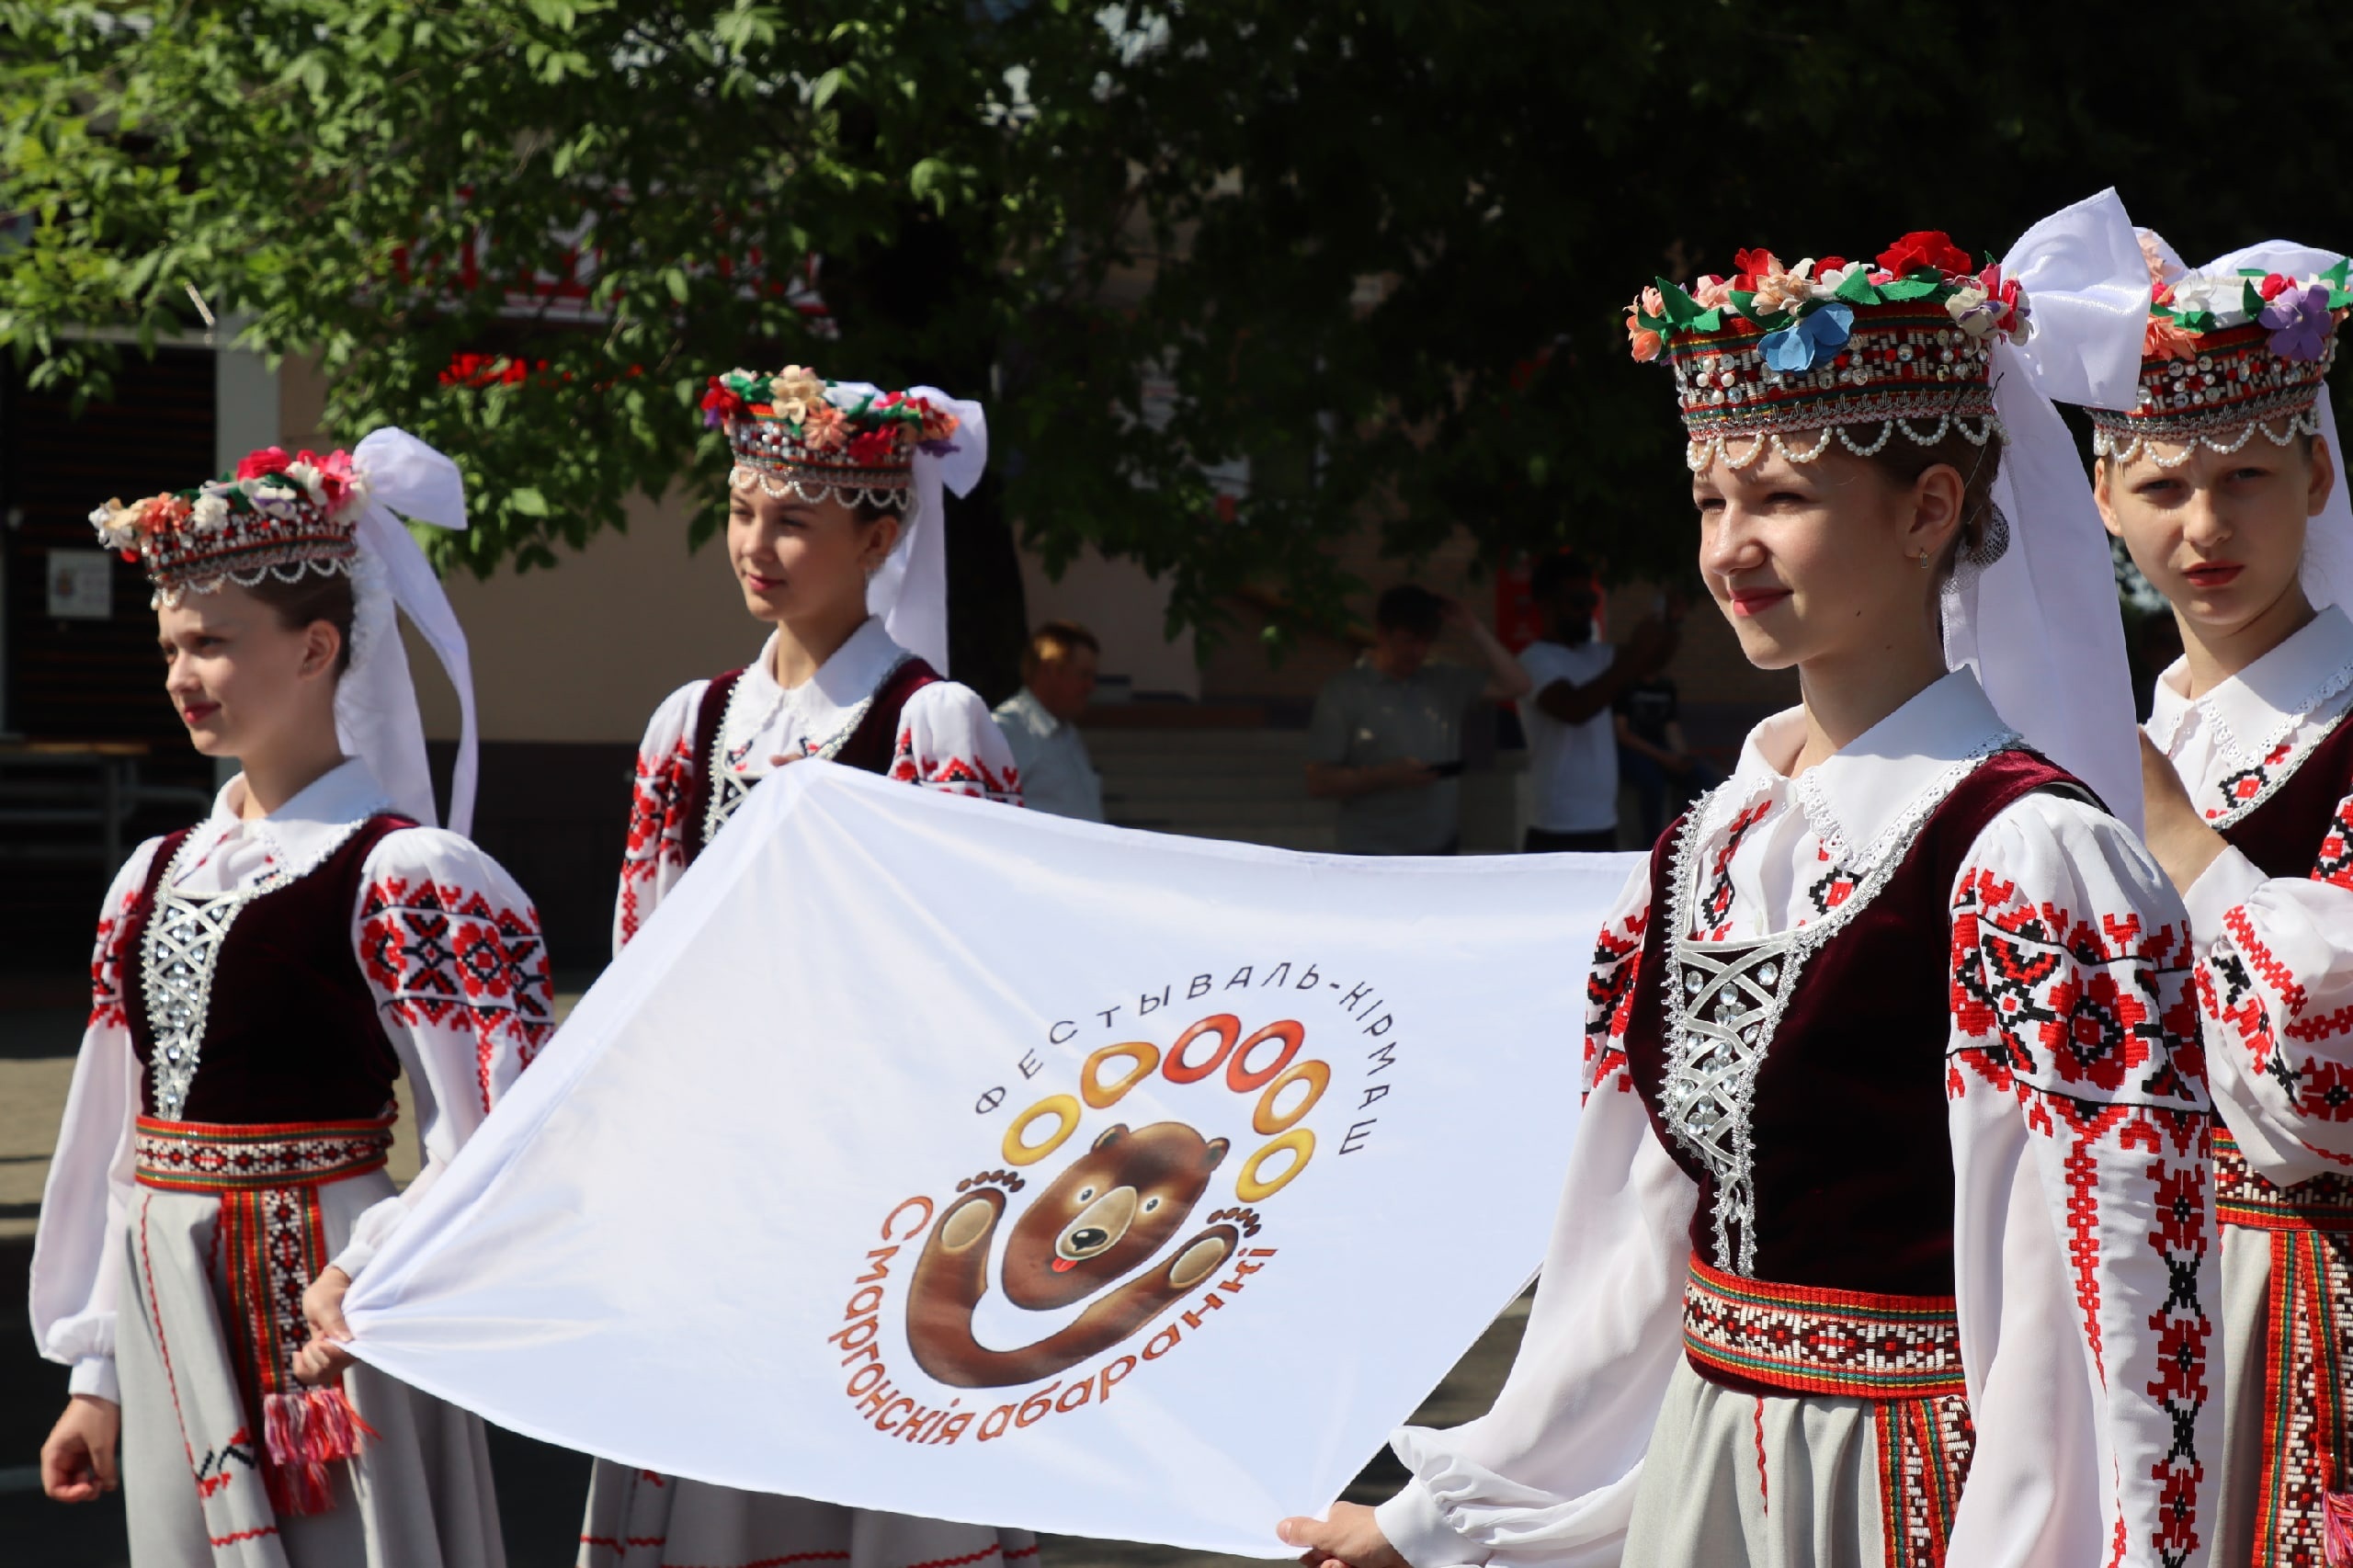 Участники фестиваля-ярмарки прошли по главной улице города